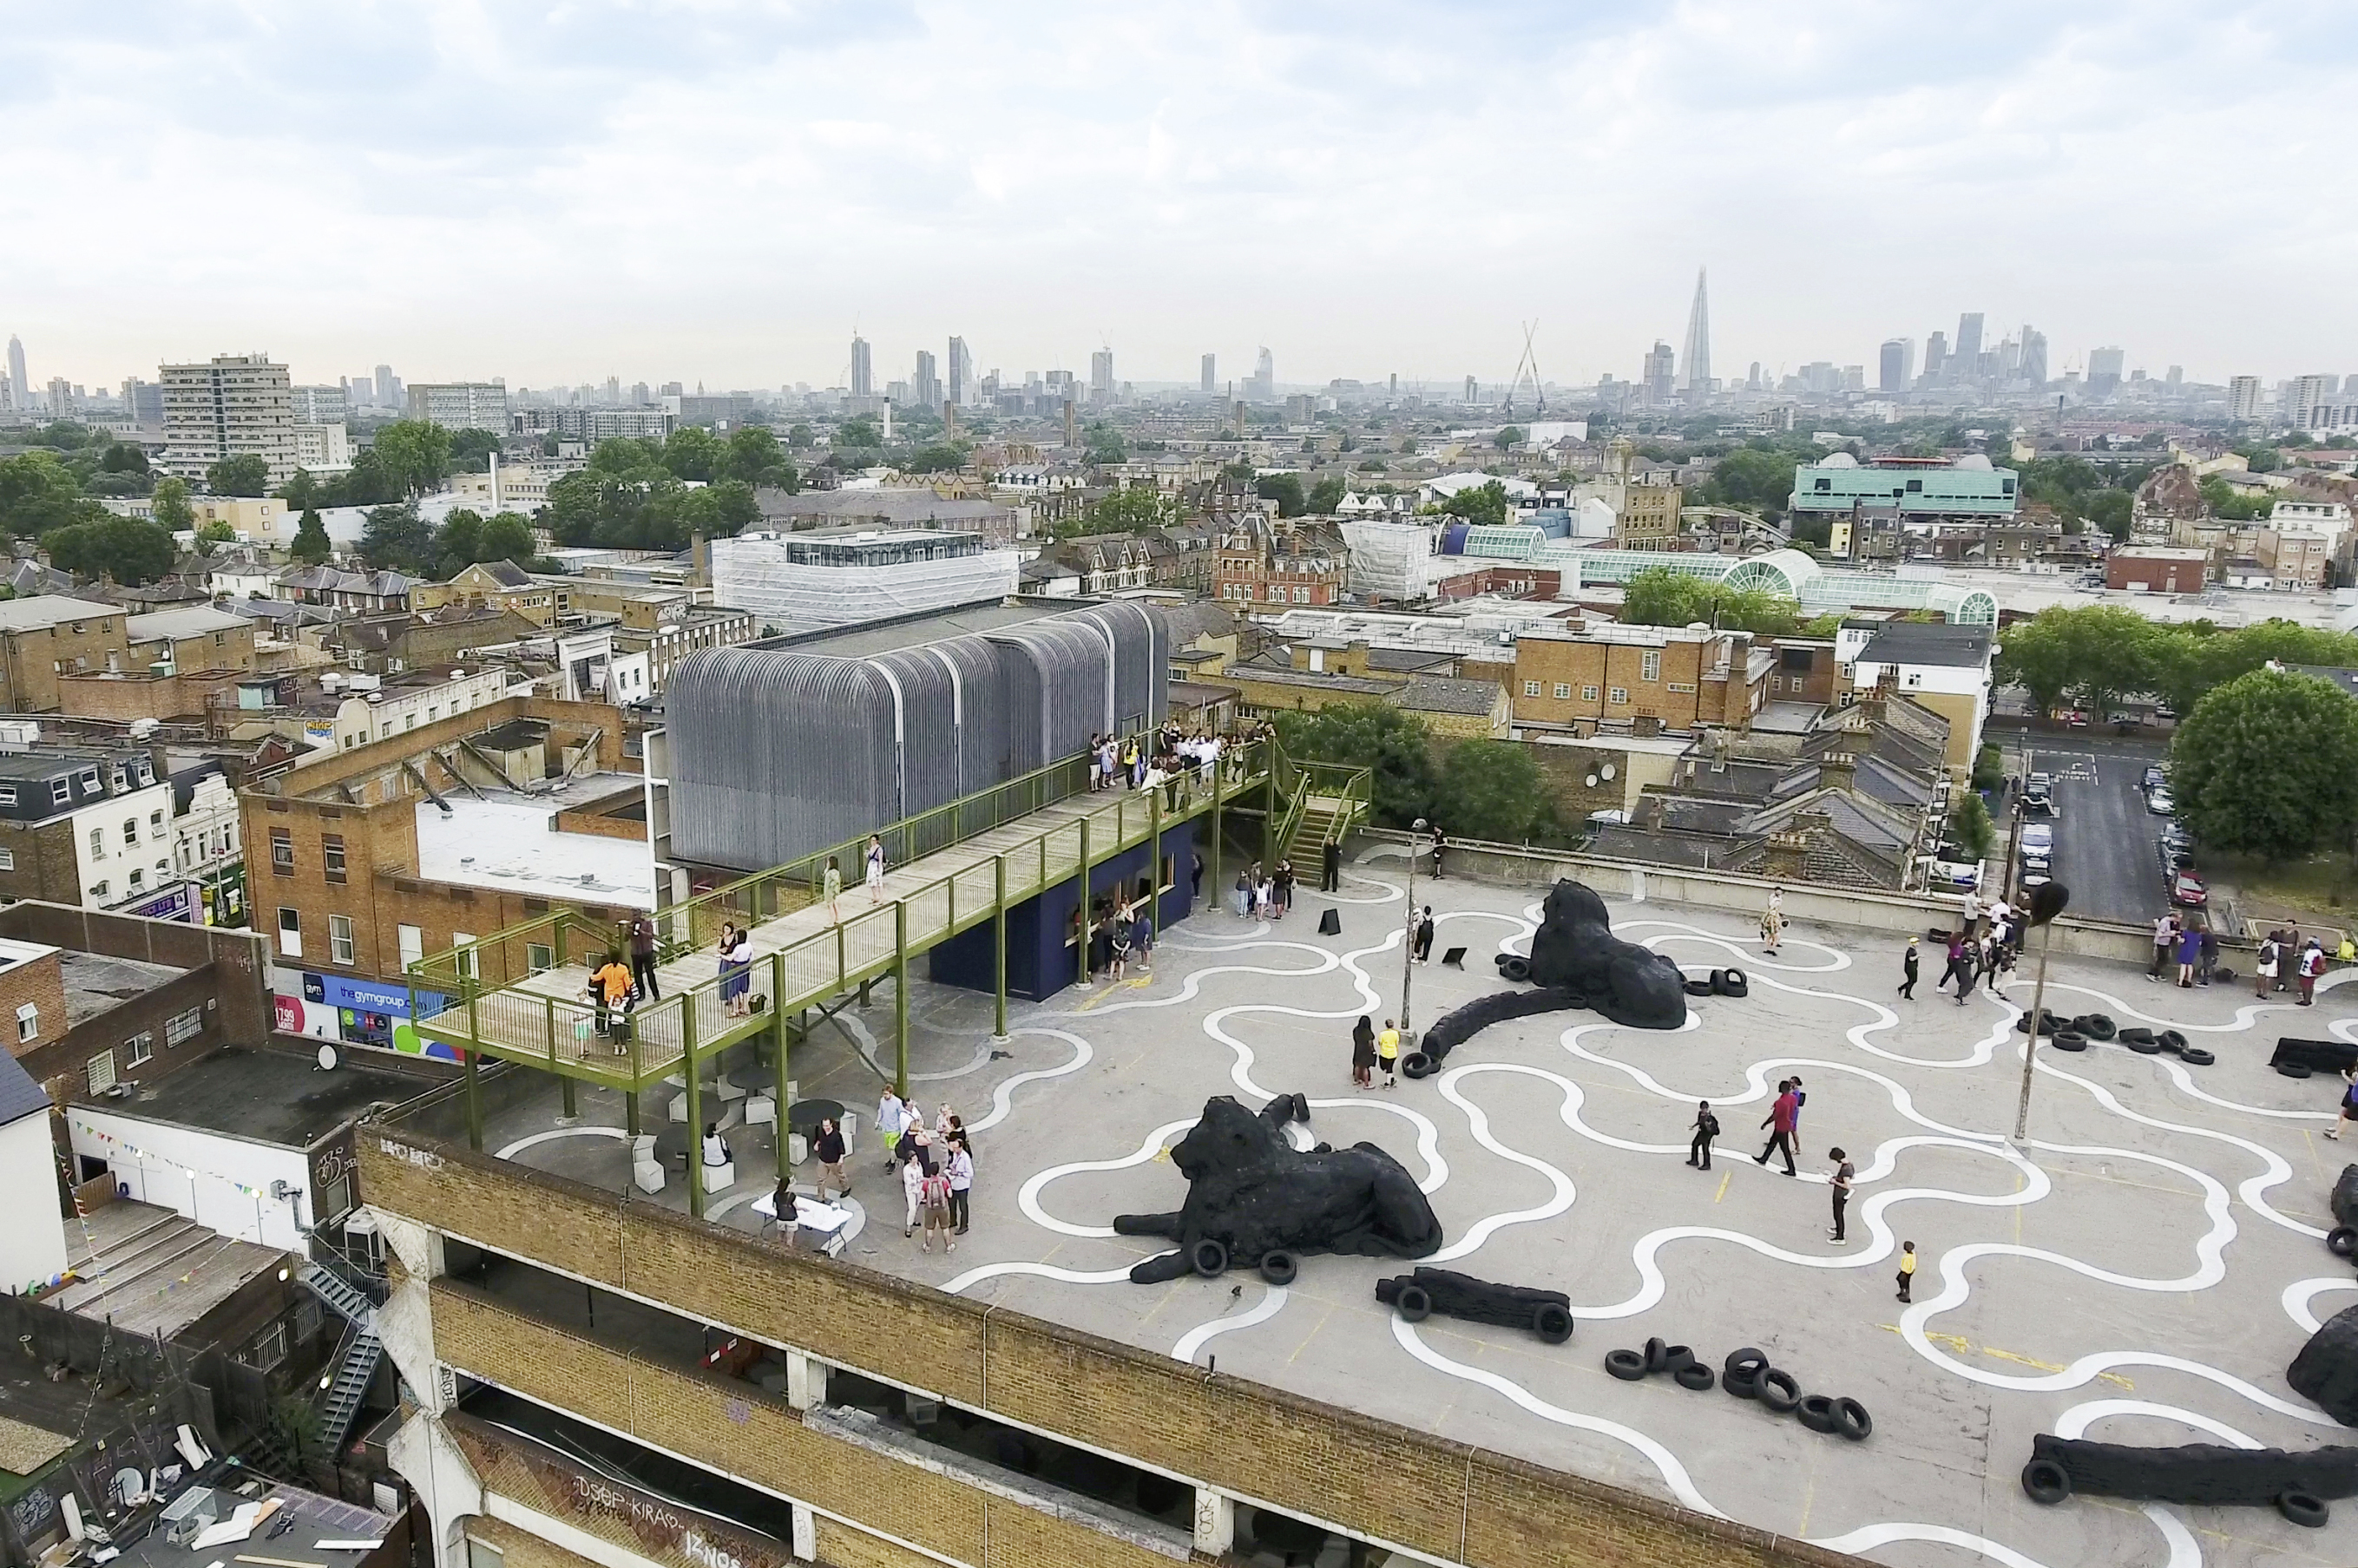 Sur le toit-terrasse du parking silo de Peckham : 4 600 m² dédiée aux installations artistiques. Dans ce quartier populaire du sud-est de Londres, ce site désaffecté est devenu depuis quelques années un haut lieu de la scène culturelle de la ville. En plus de l’exposition de sculptures, une passerelle accessible de 32 m de long surplombe la toiture. Elle intensifie la prise de hauteur sur les vues environnantes mais aussi sur les œuvres. (Architecte : Cooke Fawcett architects)